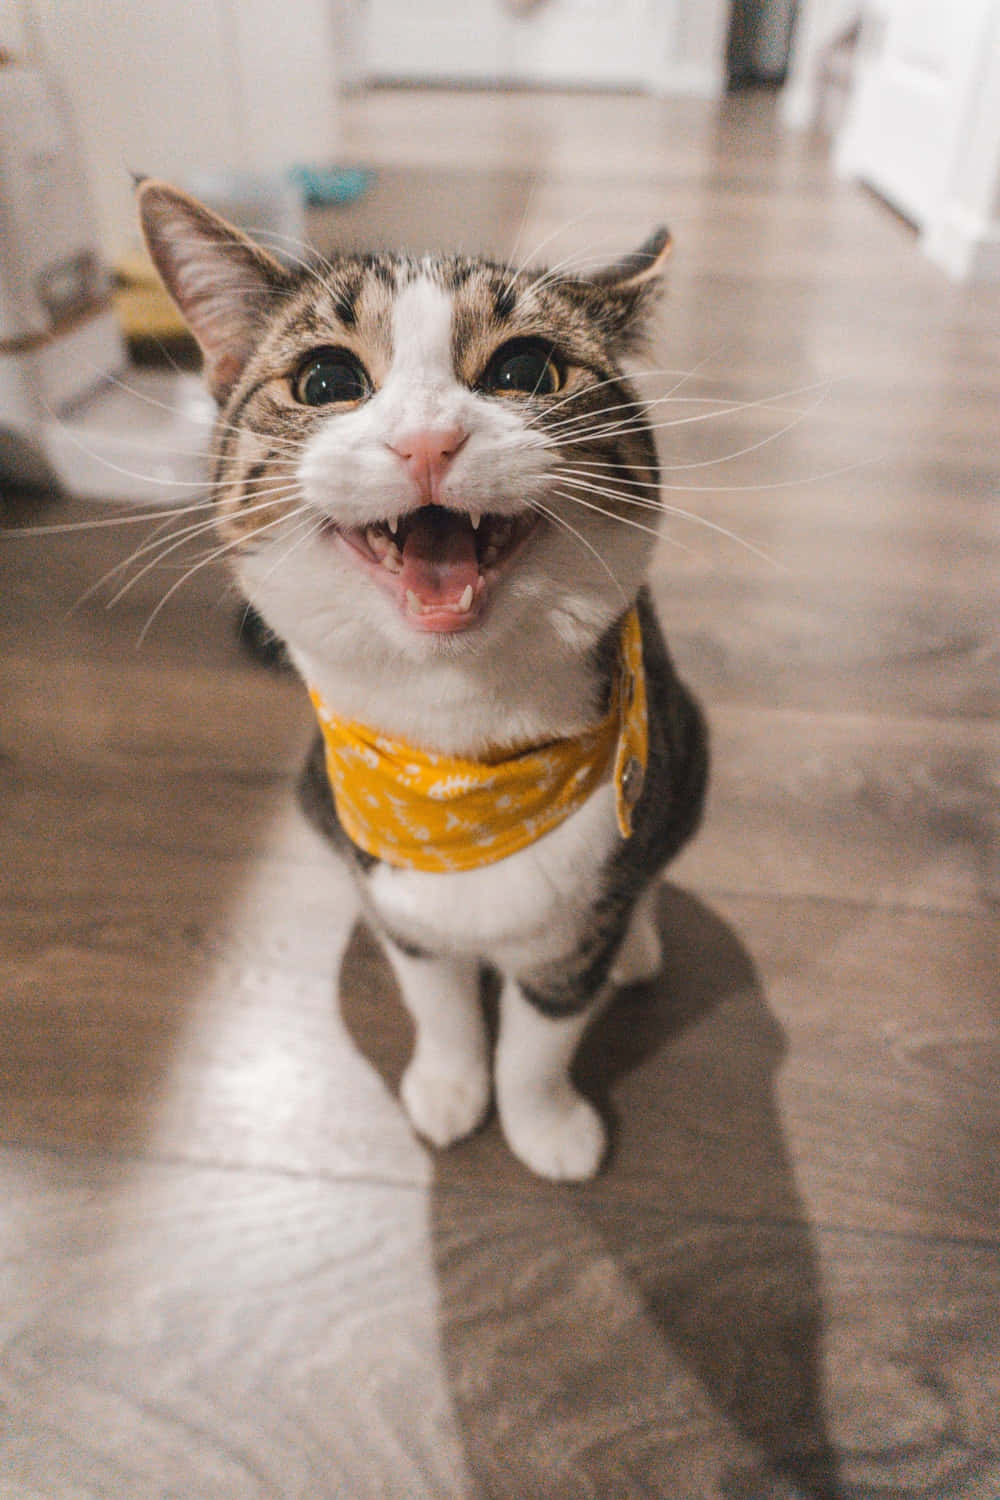 Fotode Un Gato Extraño Con Un Bonito Pañuelo Amarillo